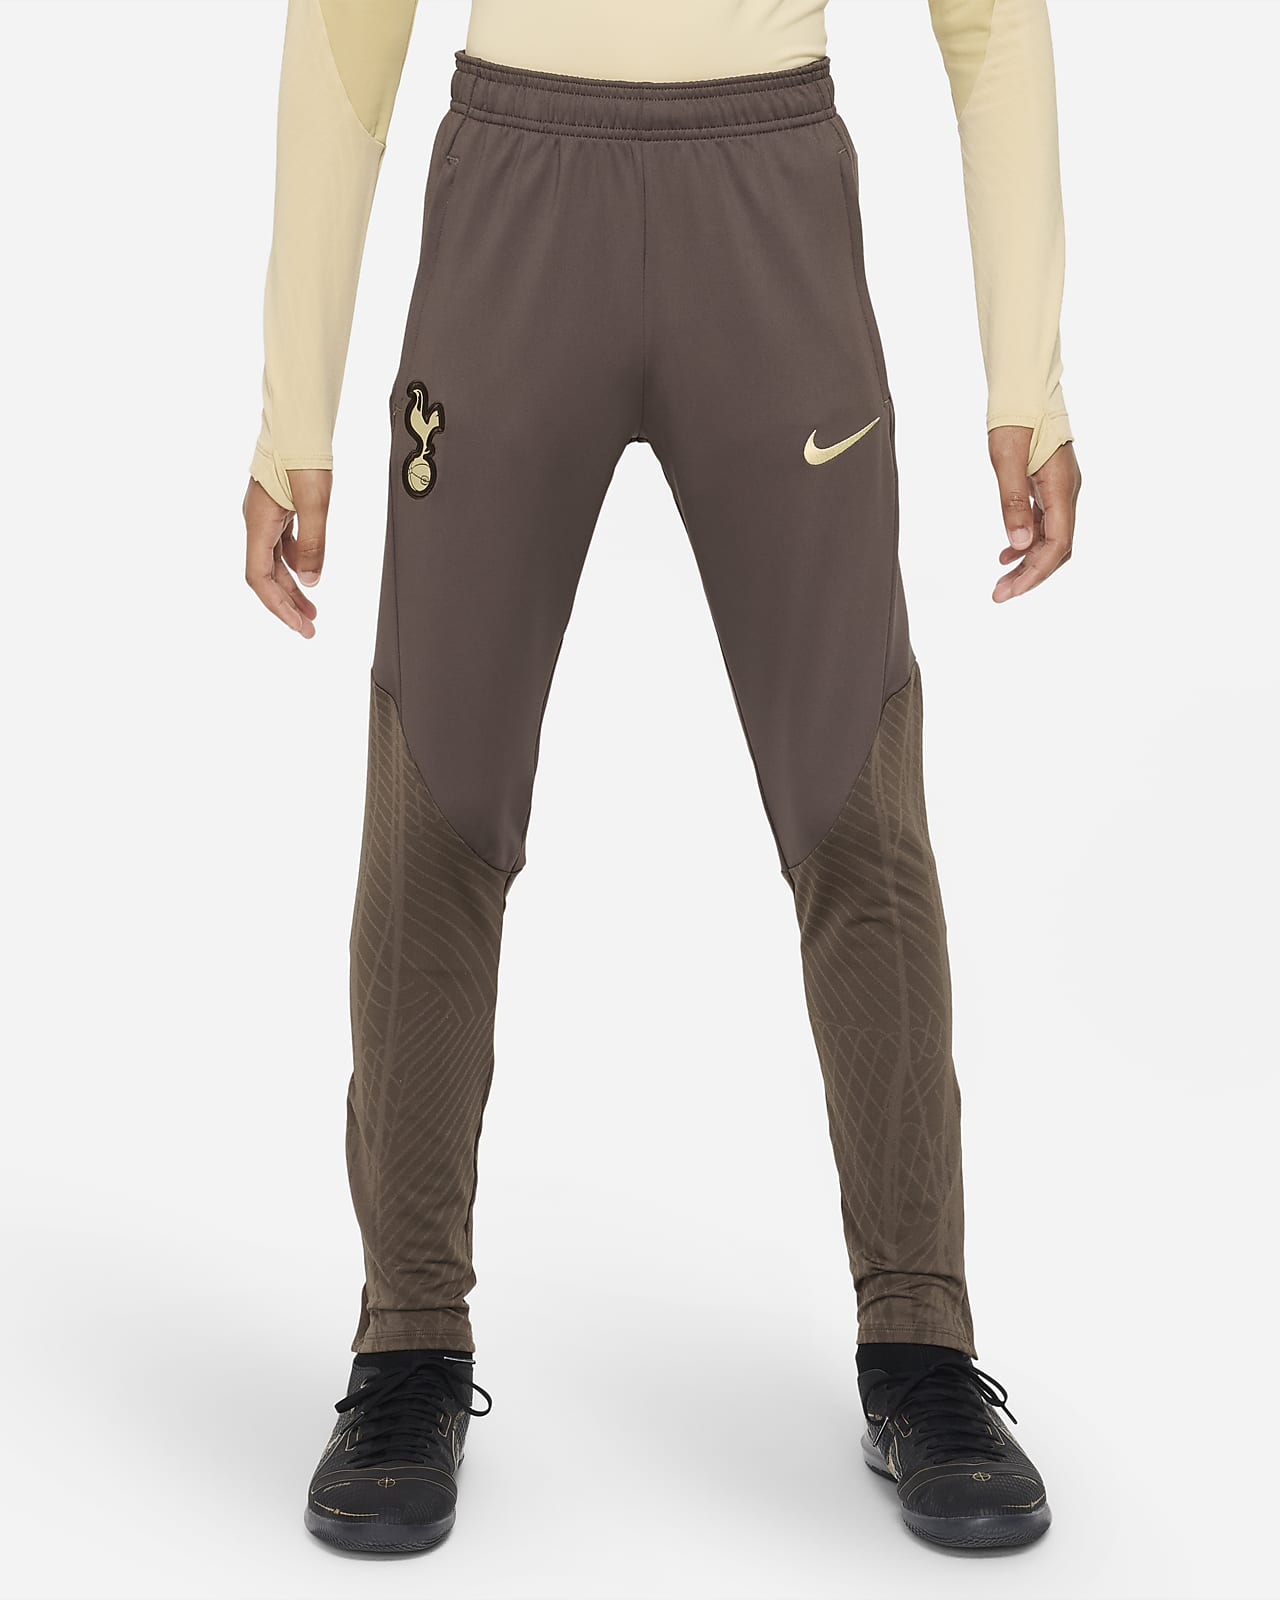 Ποδοσφαιρικό πλεκτό παντελόνι Nike Dri-FIT εναλλακτικής εμφάνισης Τότεναμ Strike για μεγάλα παιδιά